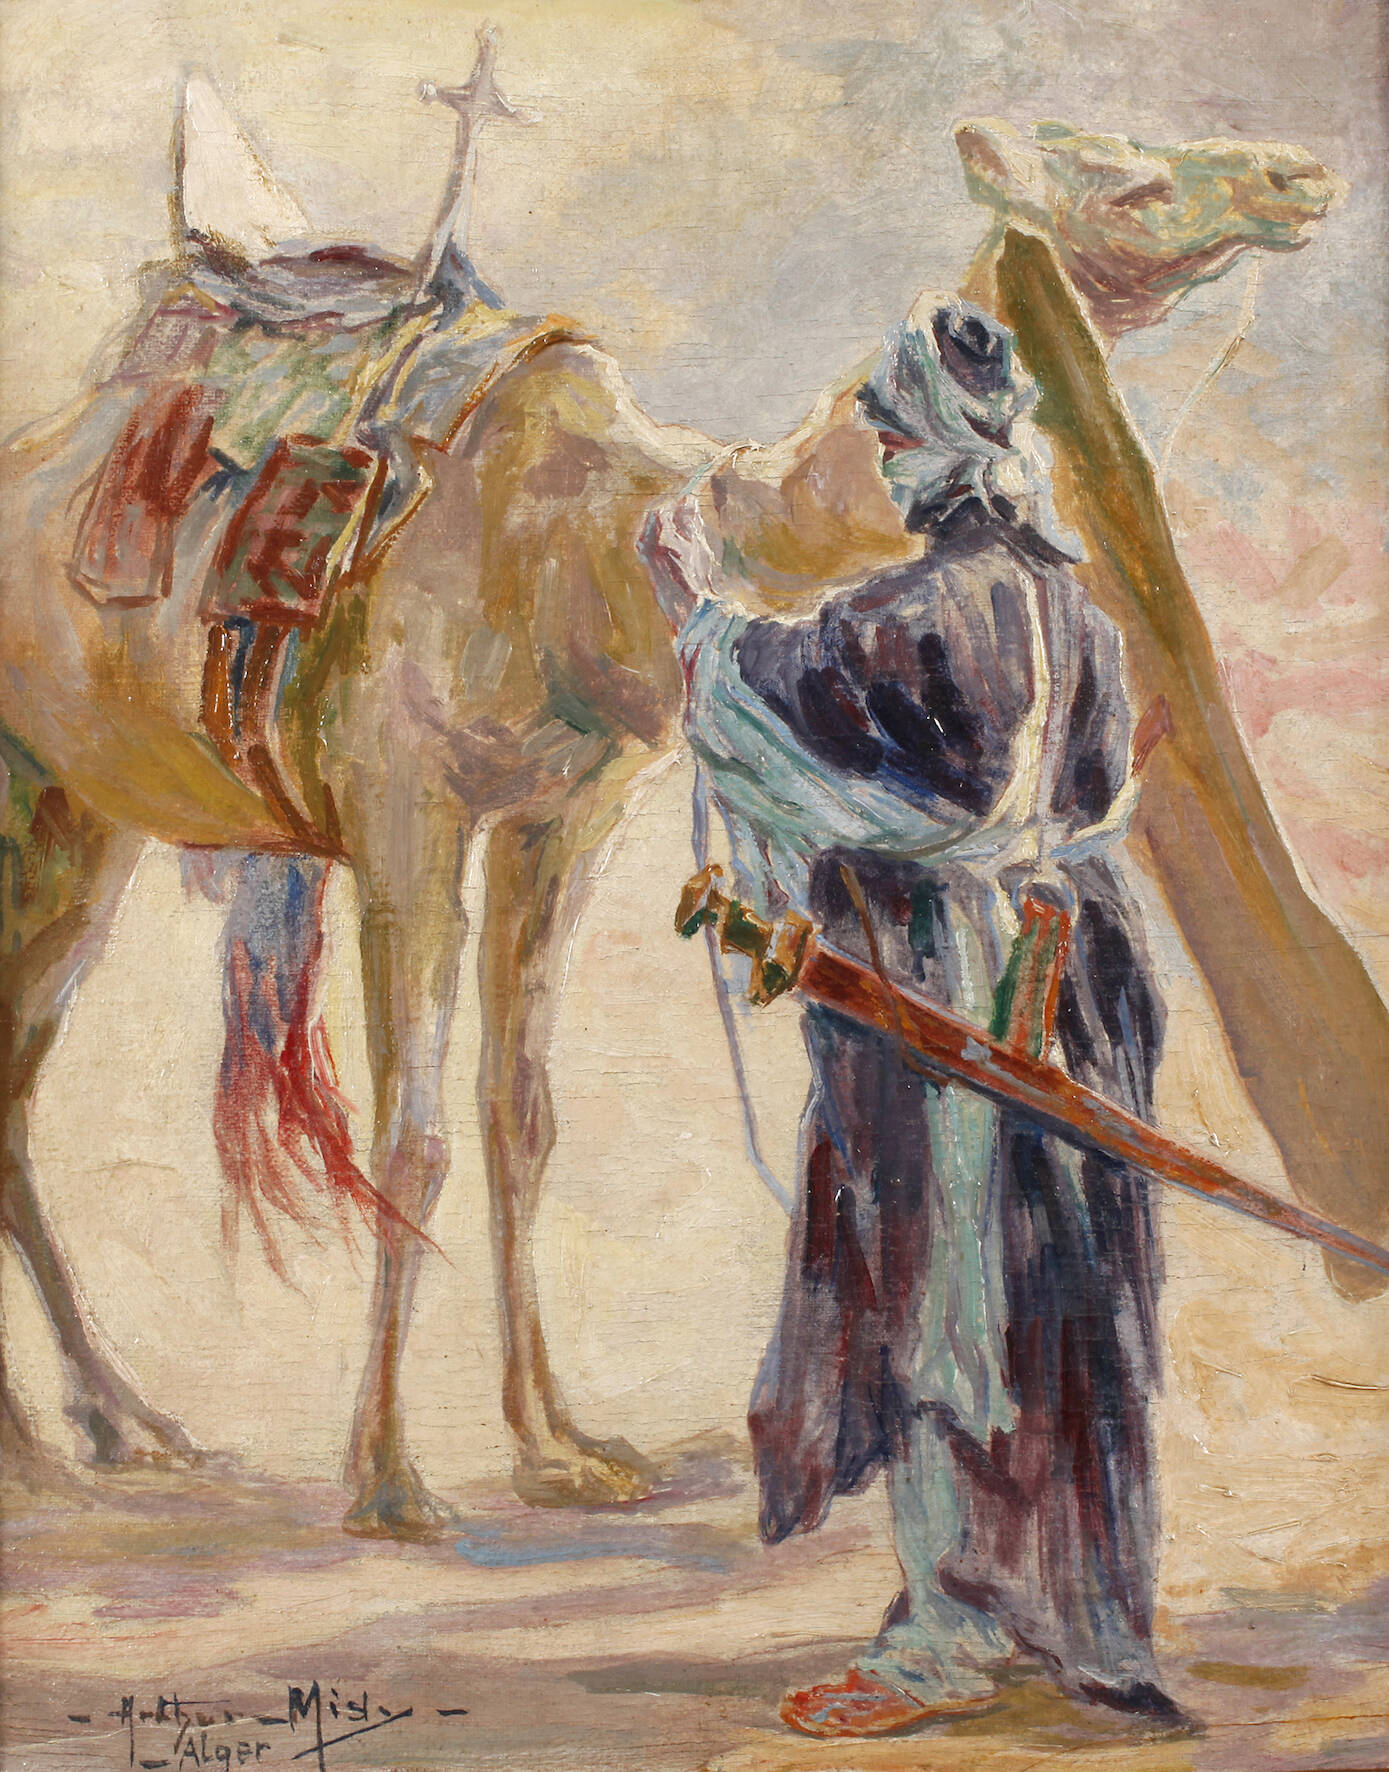 Arthur Midy, Krieger mit Kamel